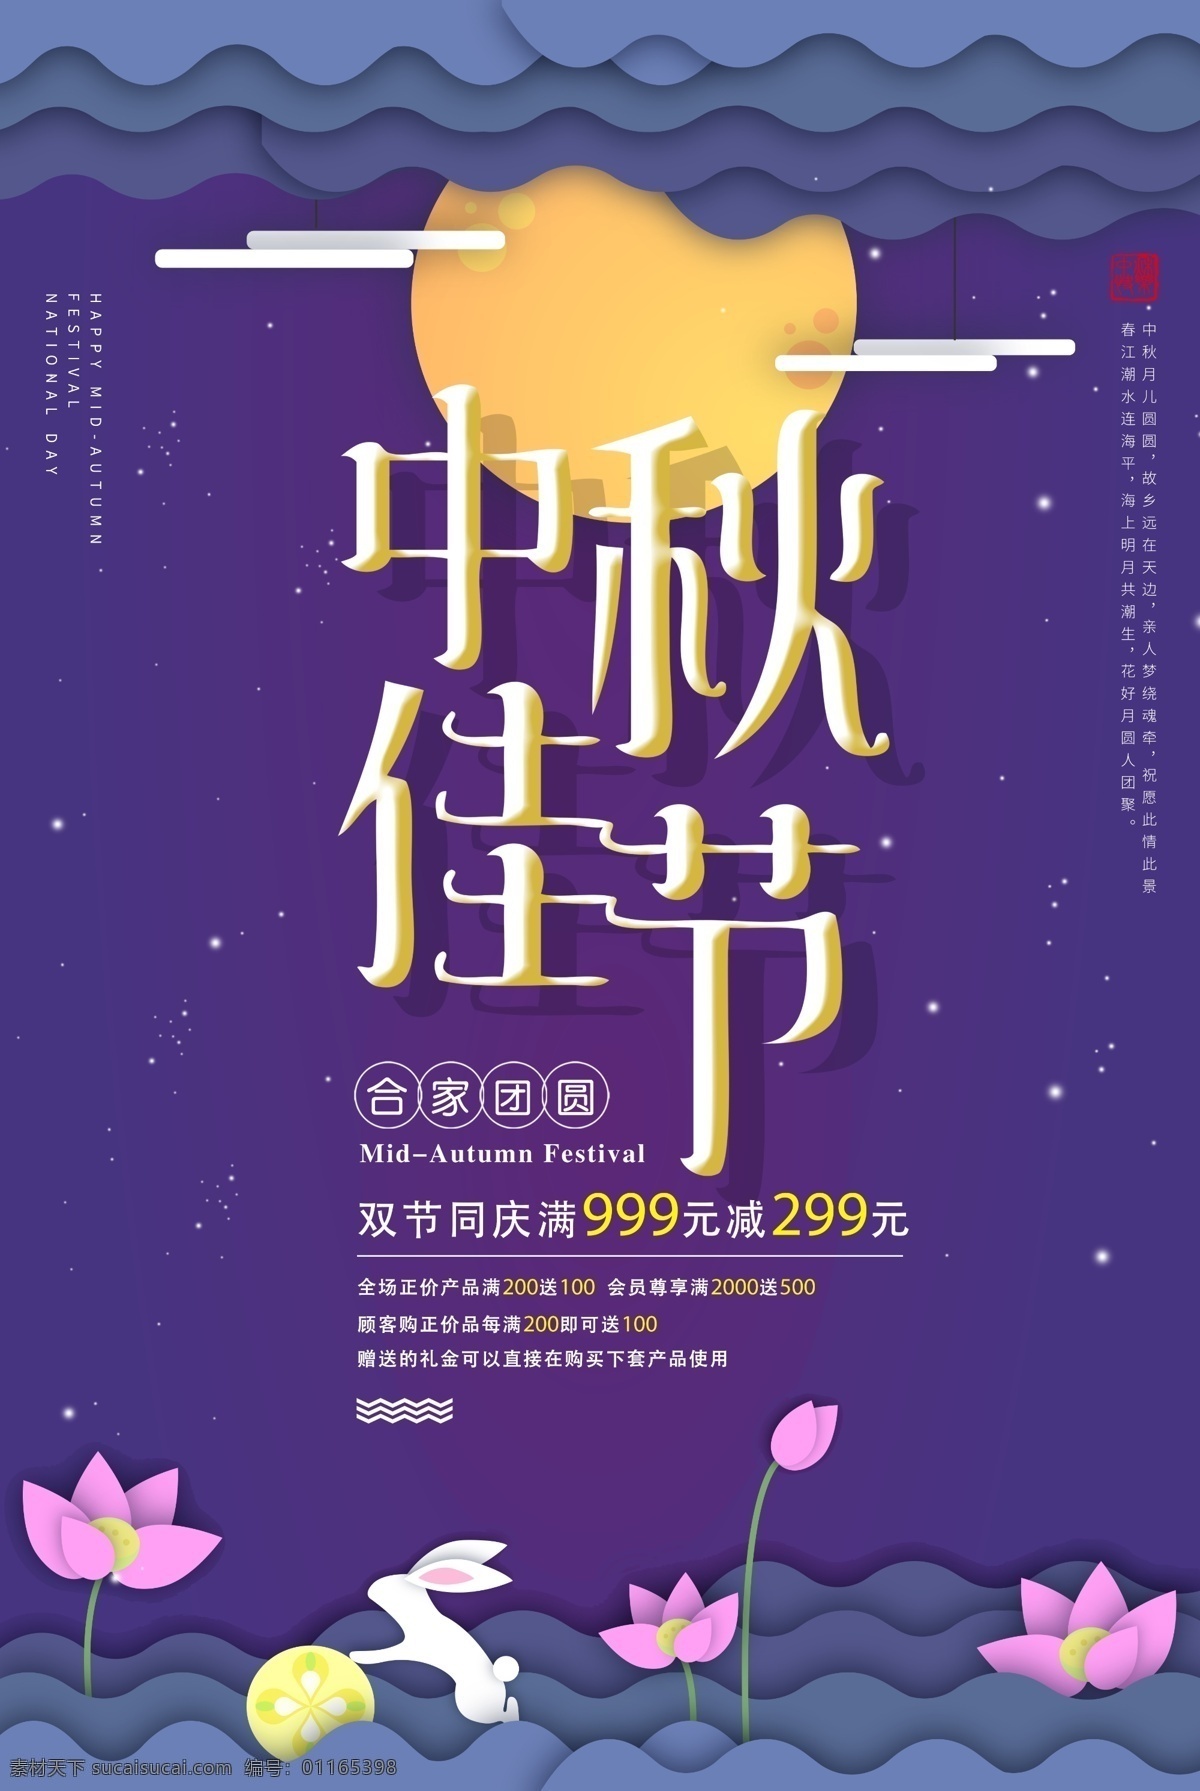 中秋节 中国传统节日 8月15日 兔子 月饼 团圆 美好 庆祝 月亮 叶子 落叶 明亮 星空 夜晚 植物 郊外 节日海报